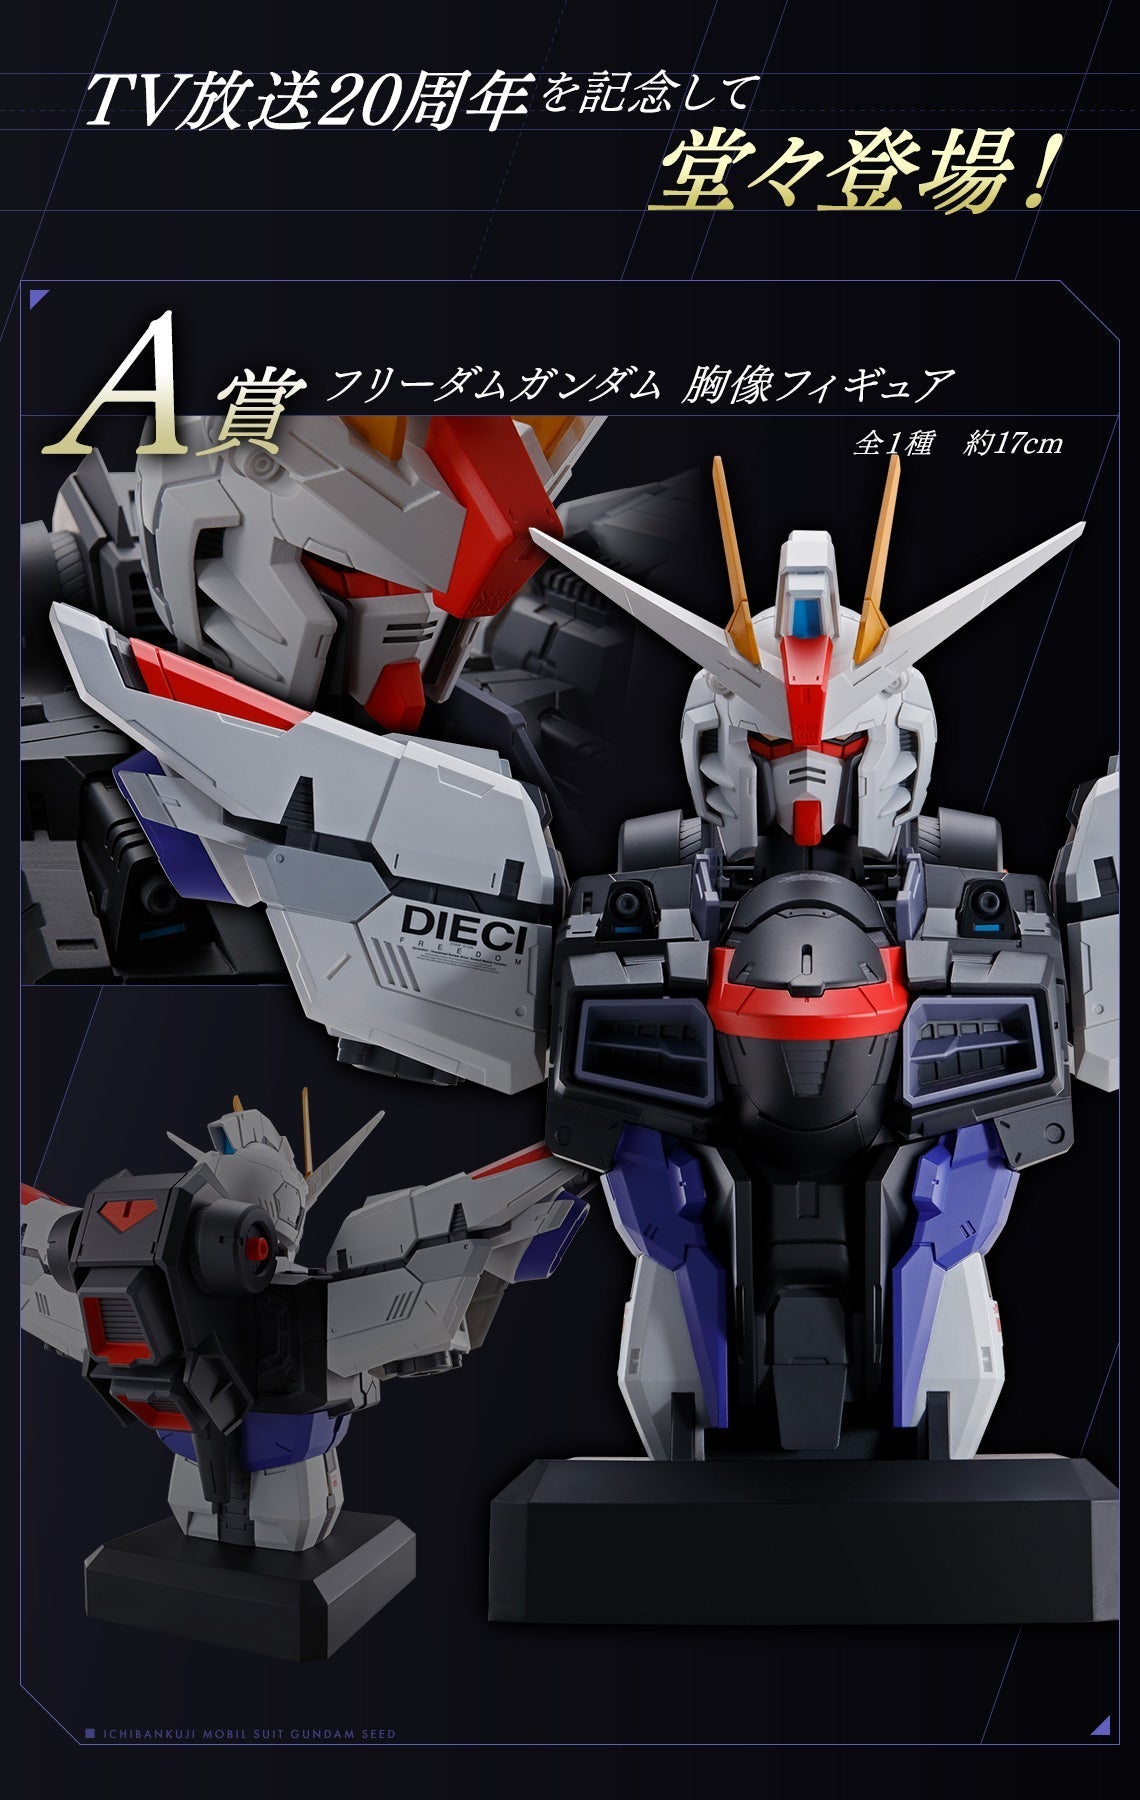 (Whole Set 80tix) Ichiban Kuji Mobile Suit Gundam Seed